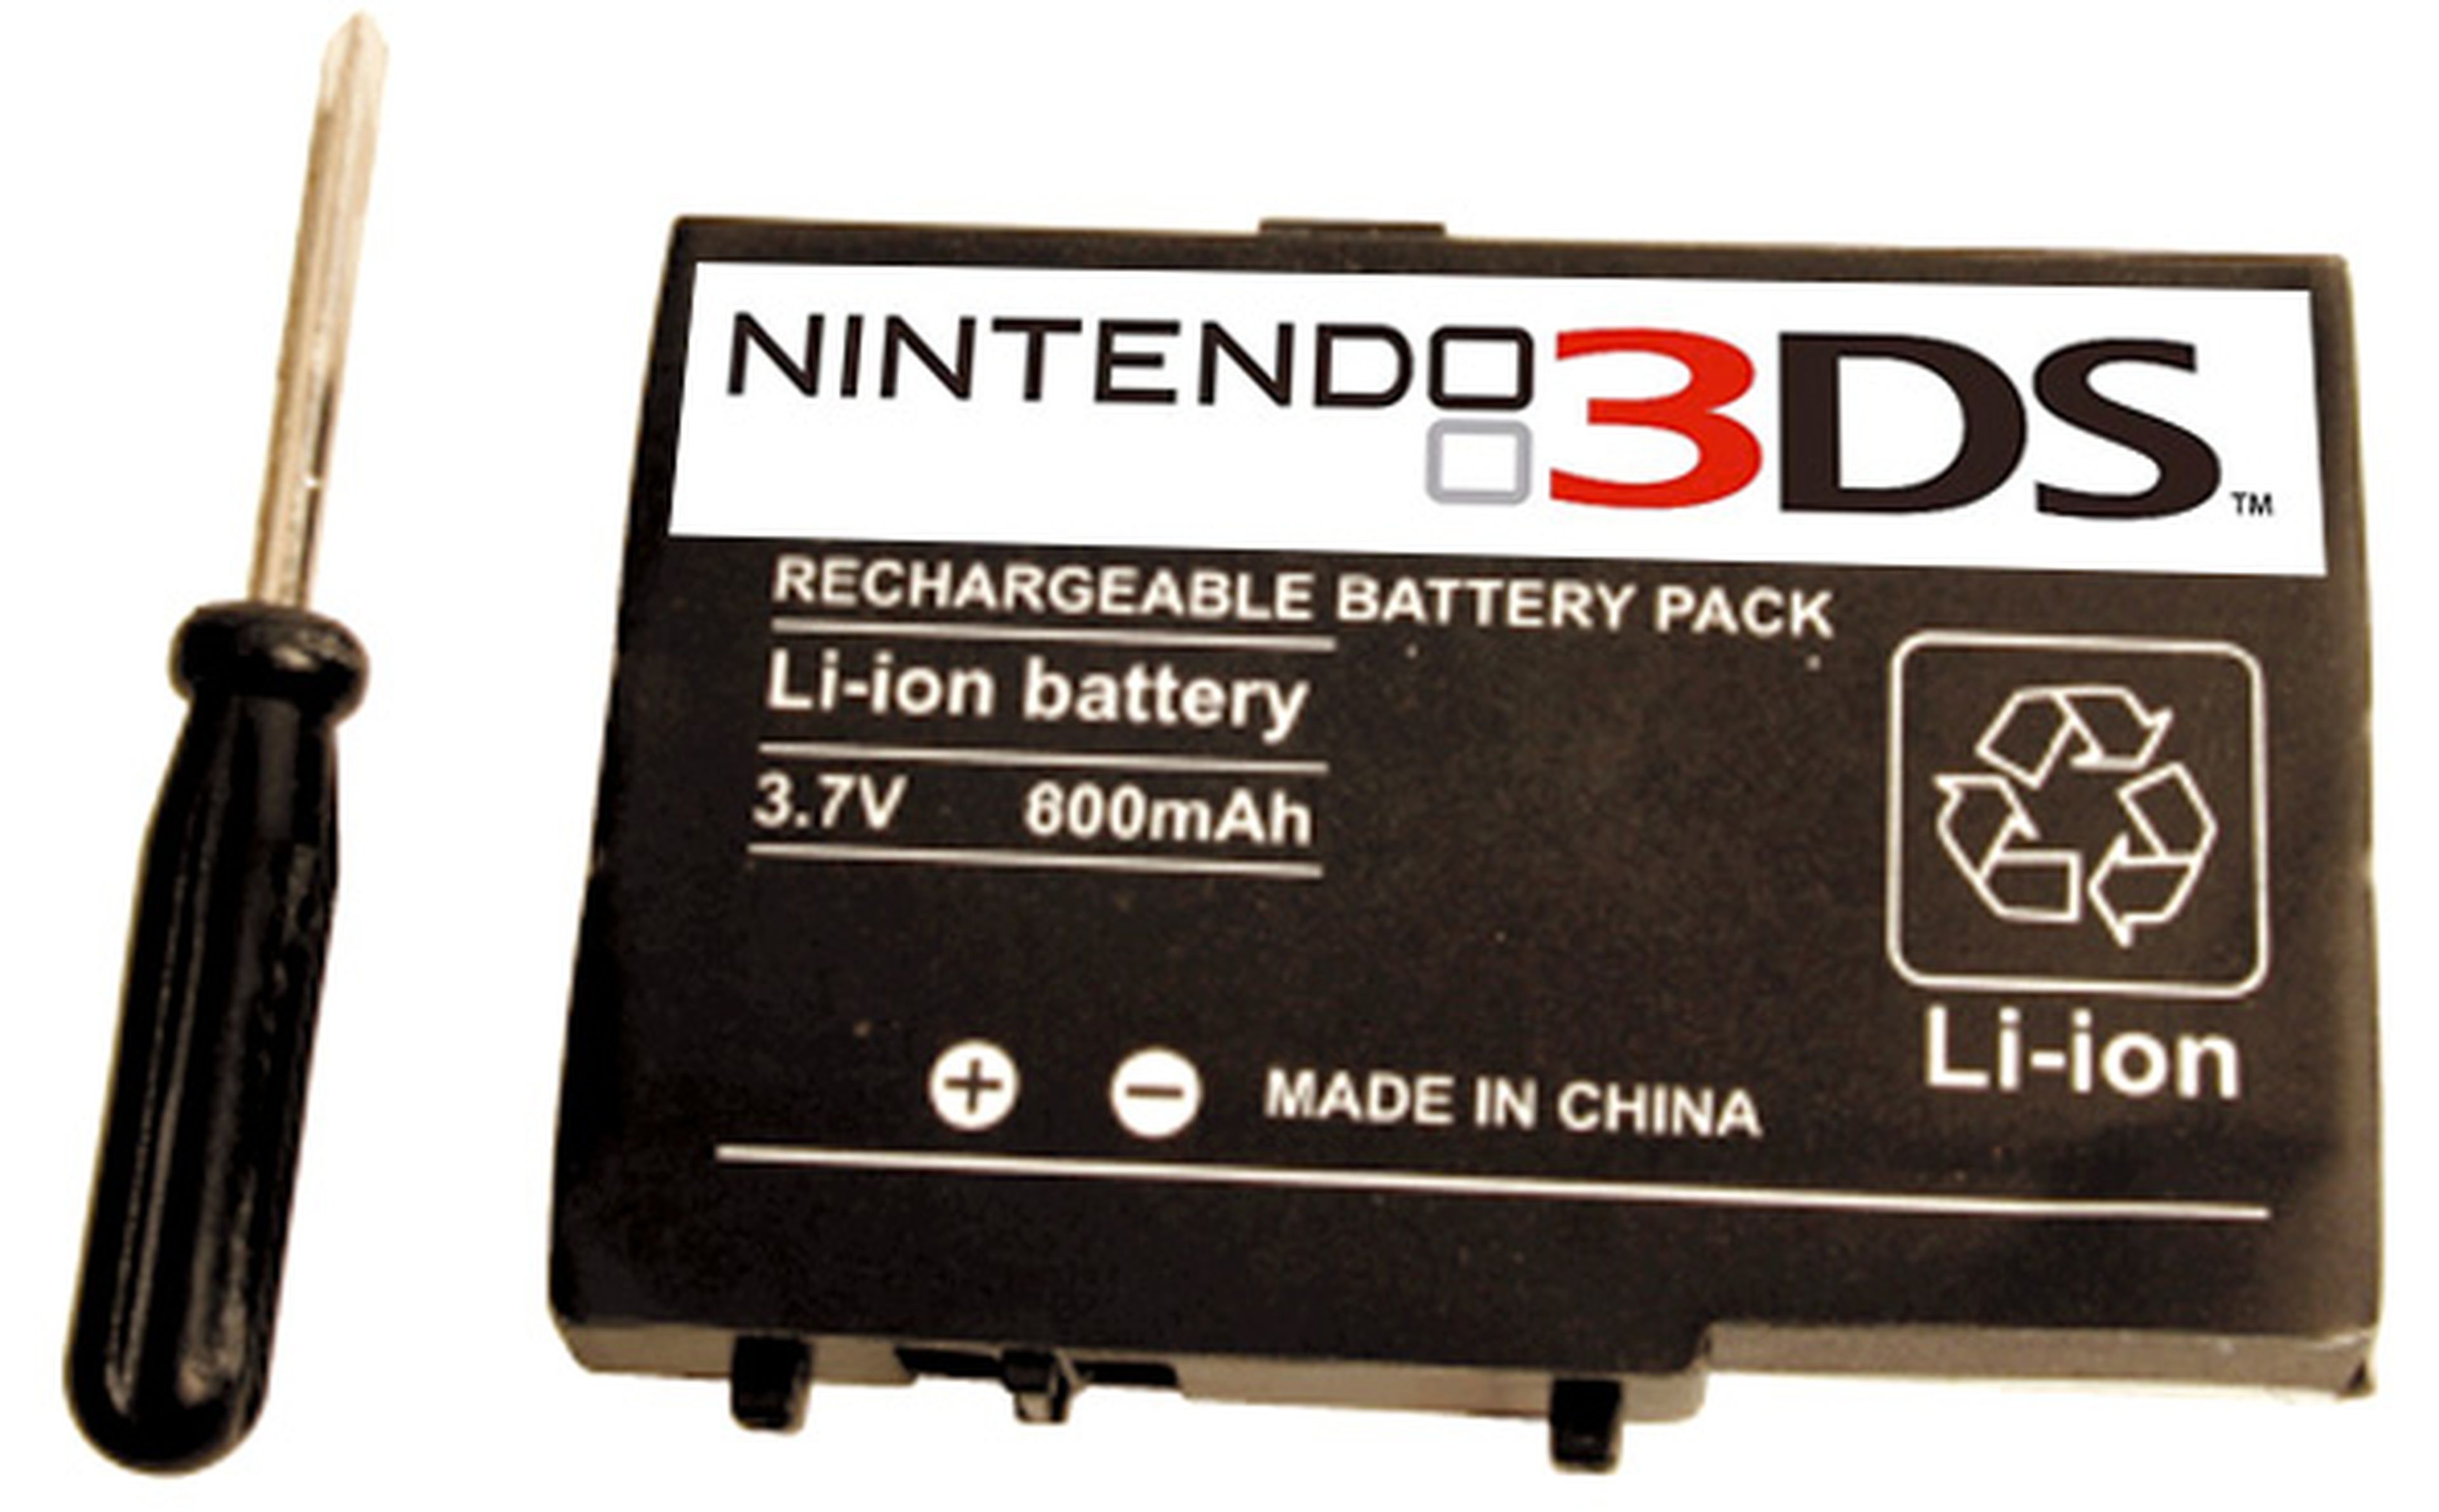 ¿La batería de 3DS dura muy poco?